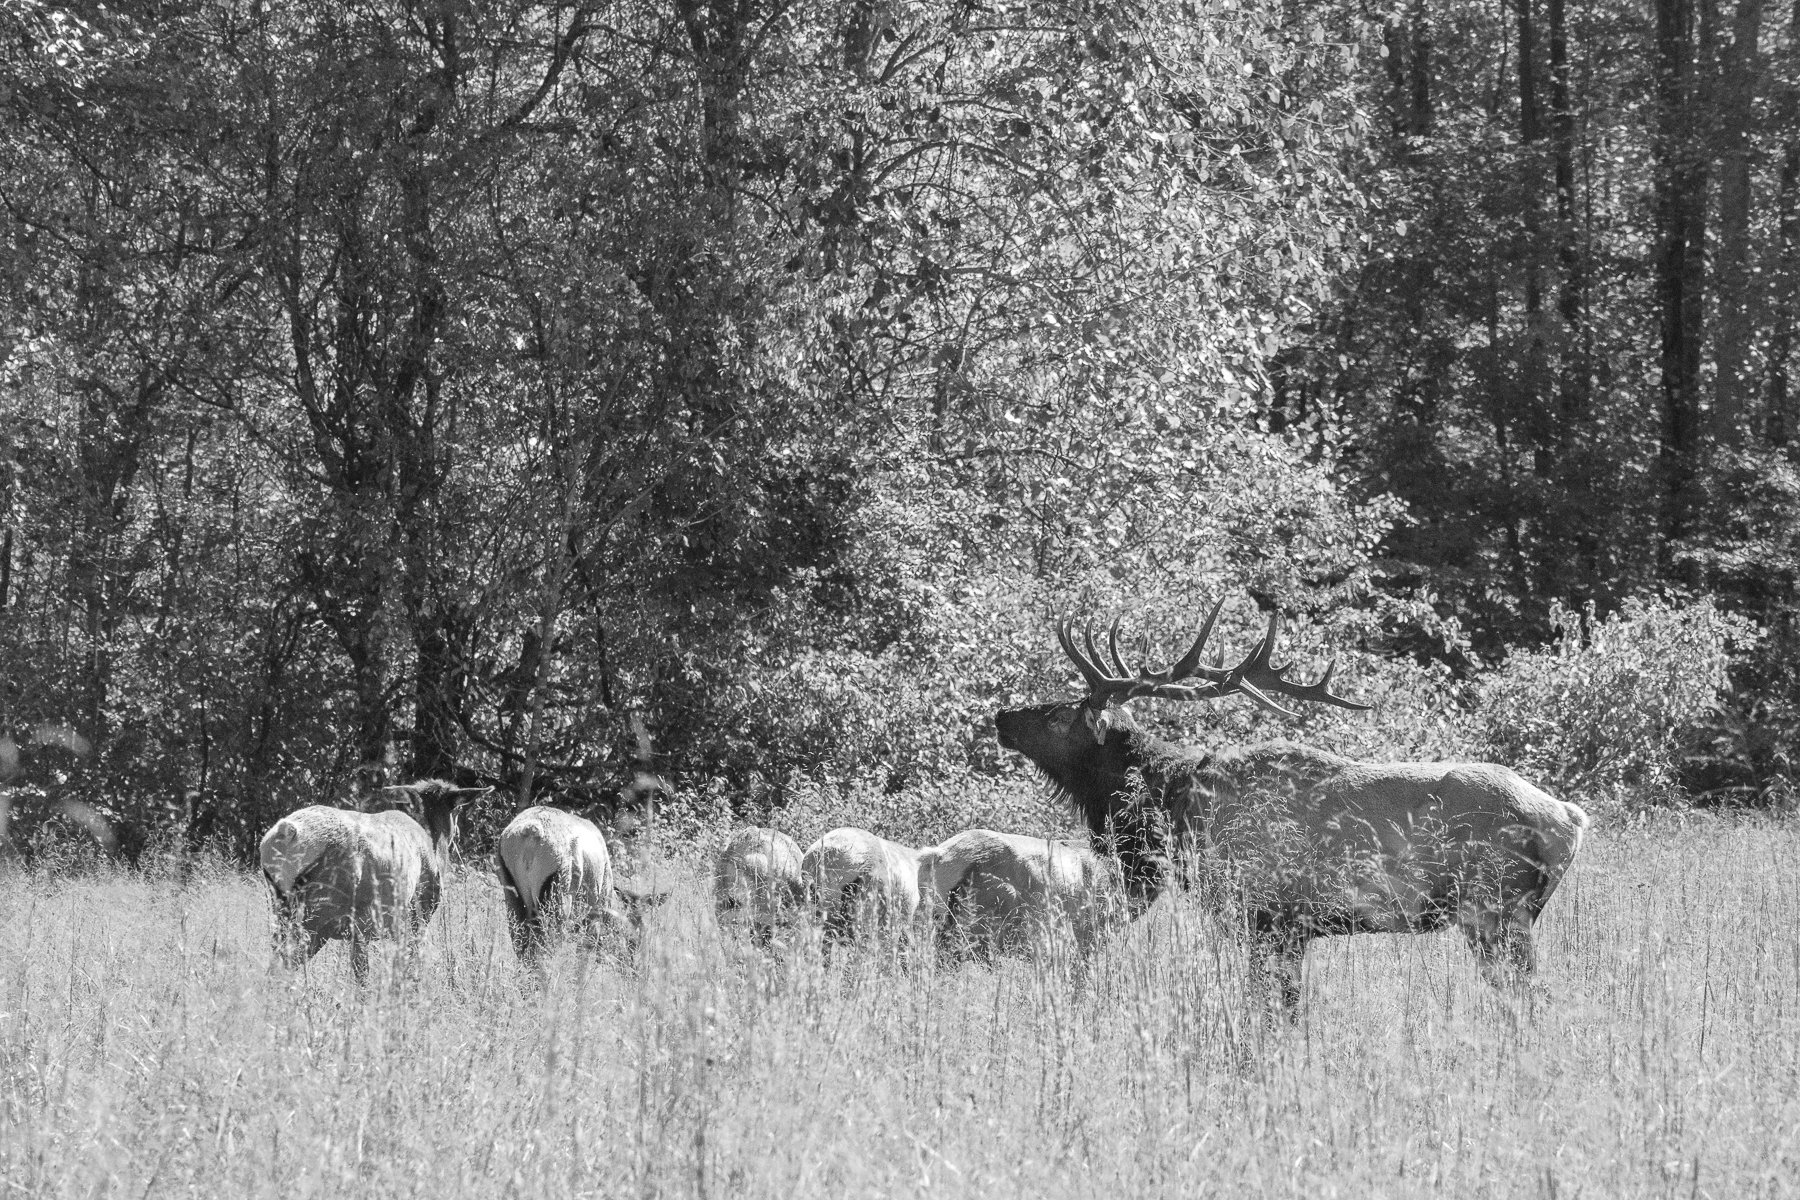 Elk Rounding Up His Heard2045.jpg